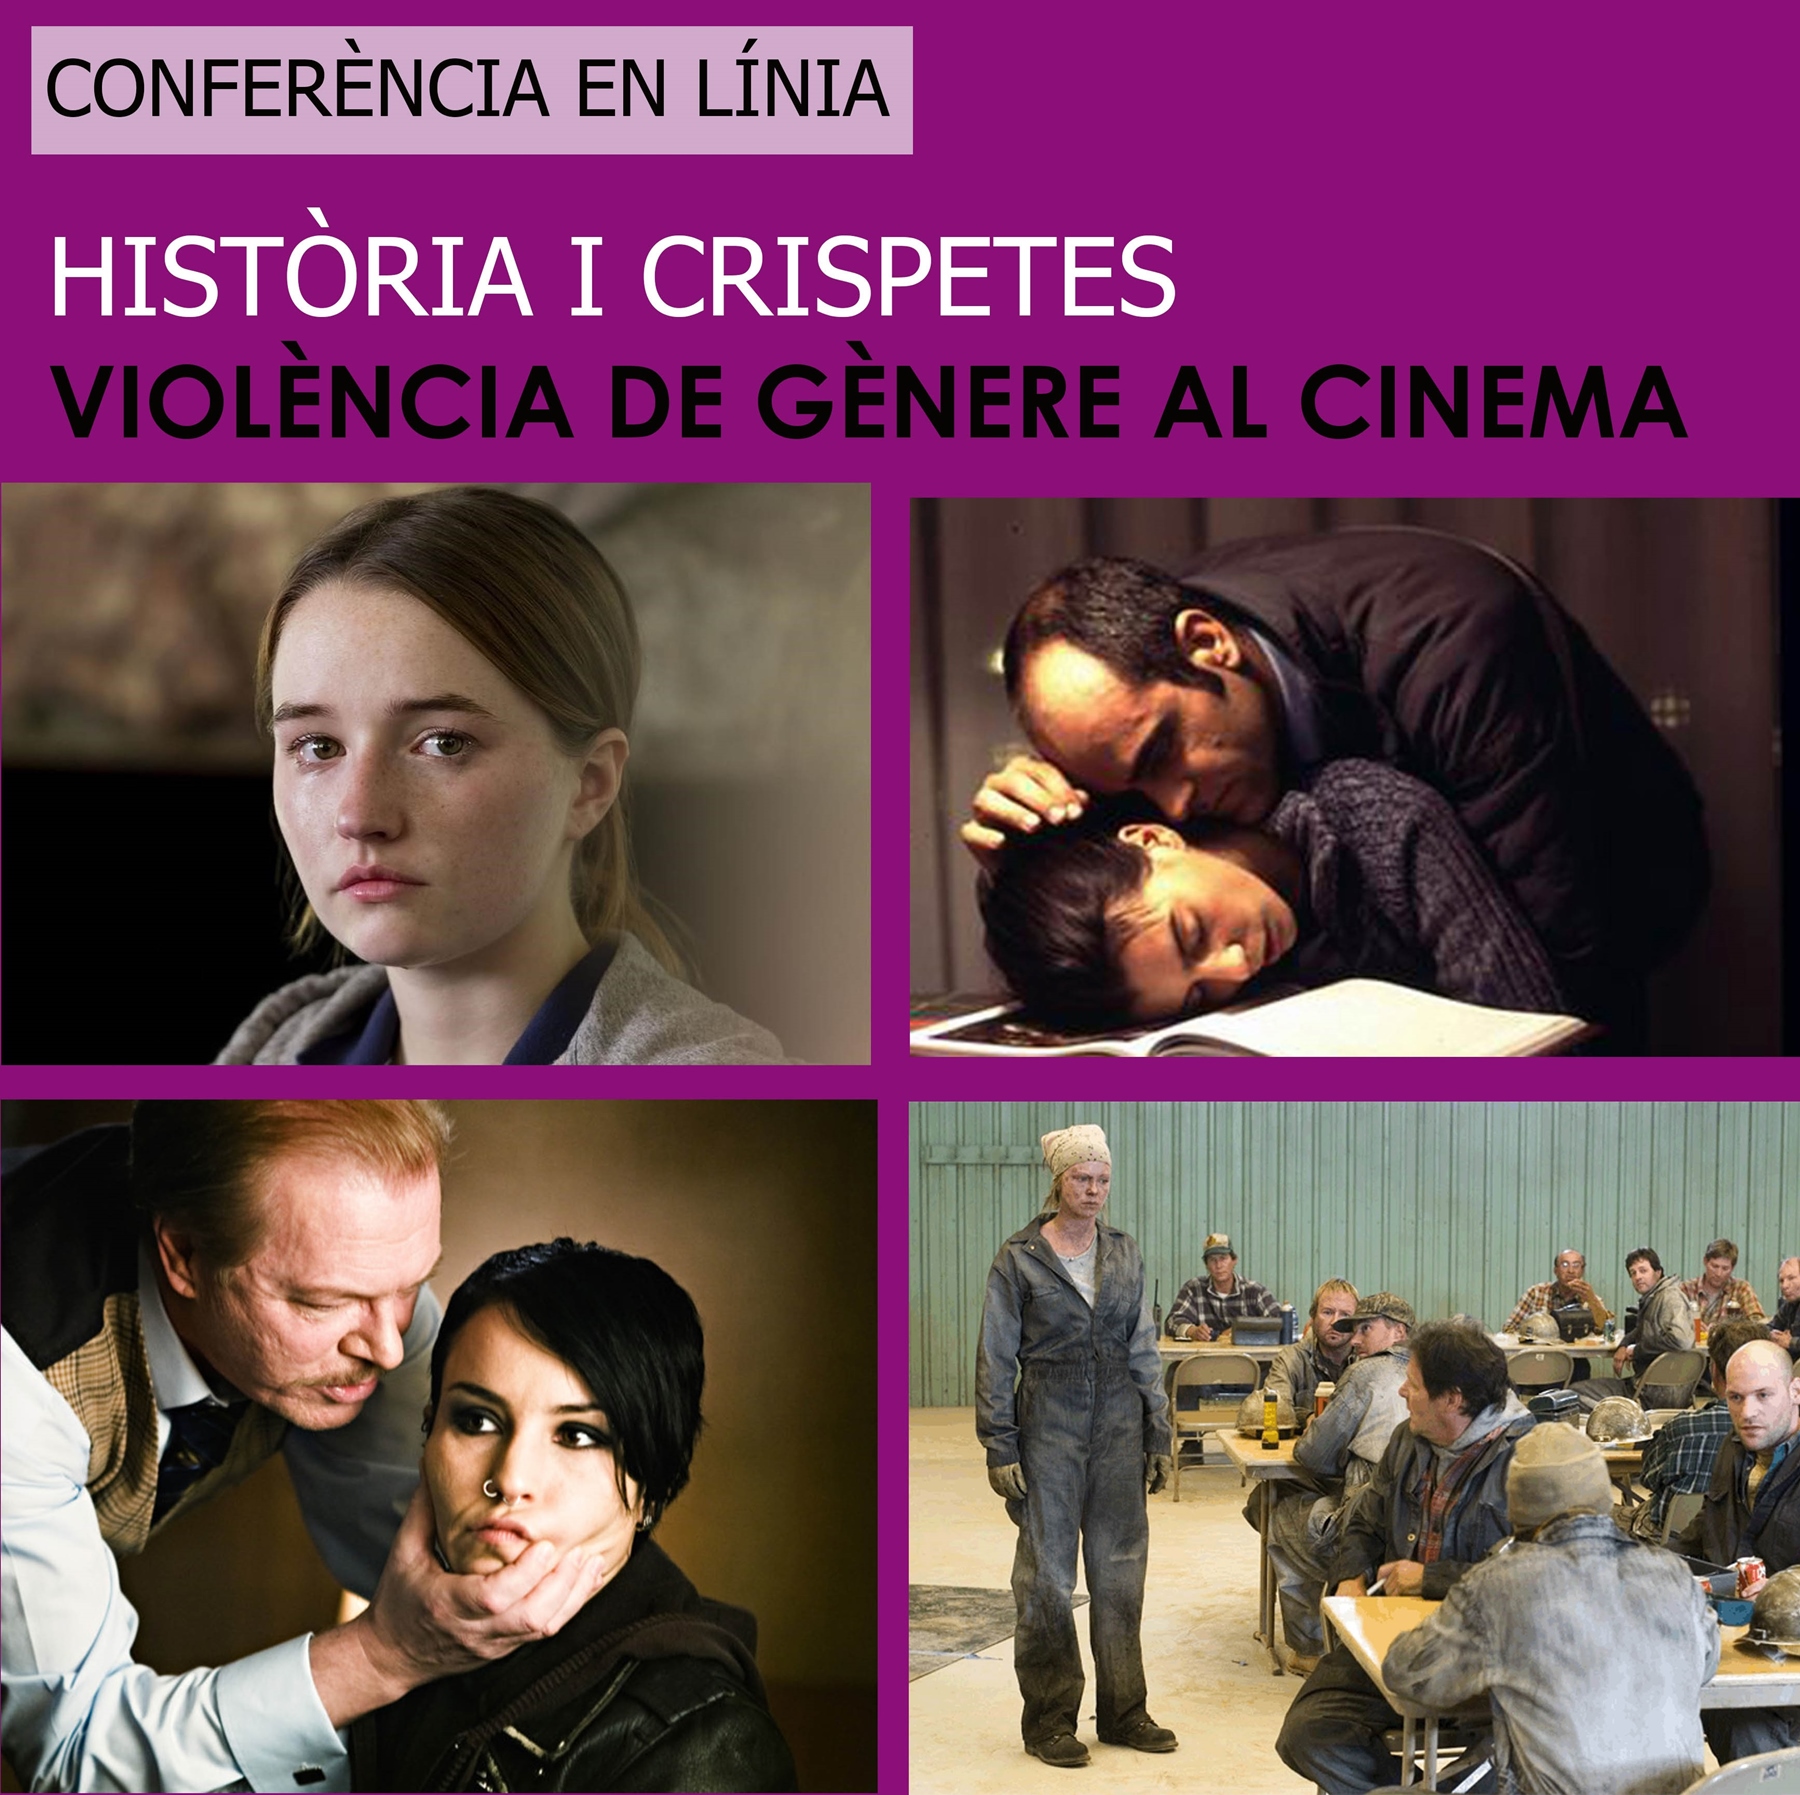 Història & crispetes 1920-2020:  Violència de gènere al cinema (Conferència en línia)